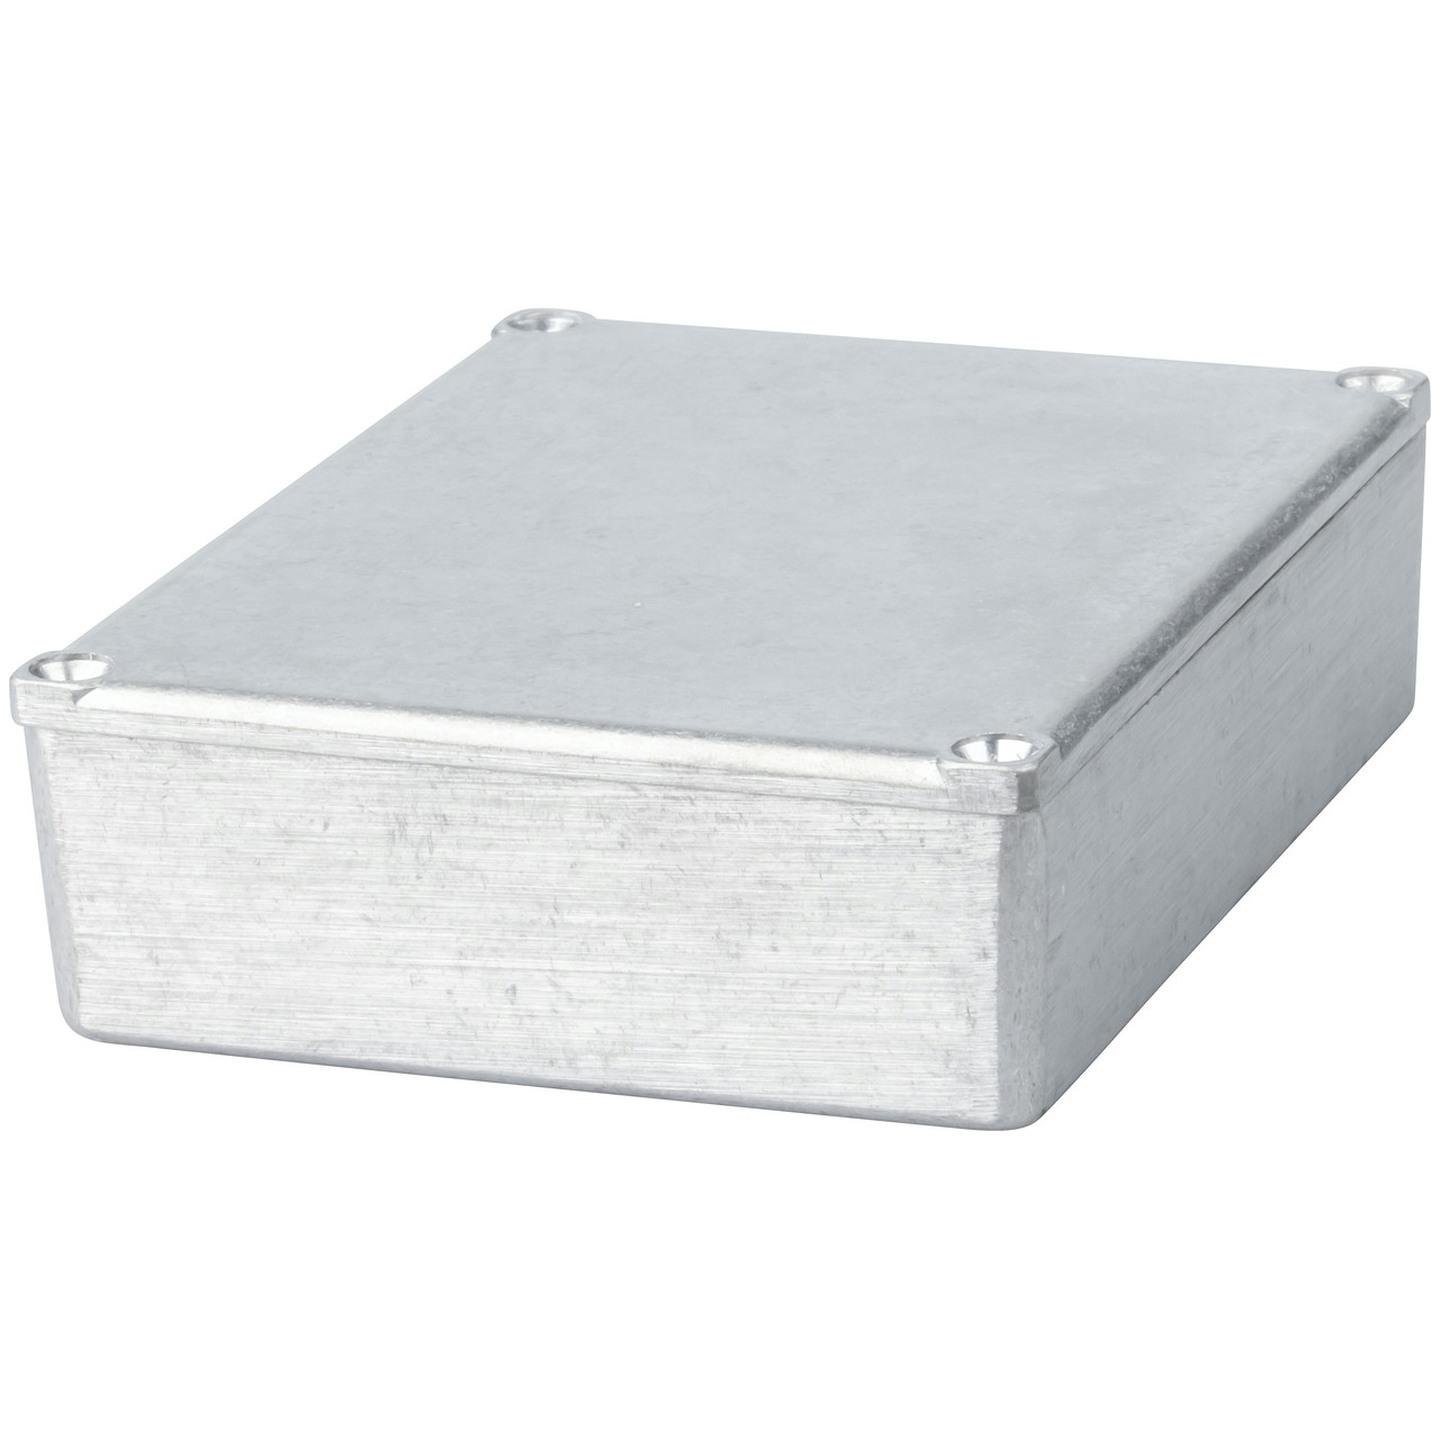 Economy Die-cast Aluminium Boxes - 119 x 93.5 x 34mm